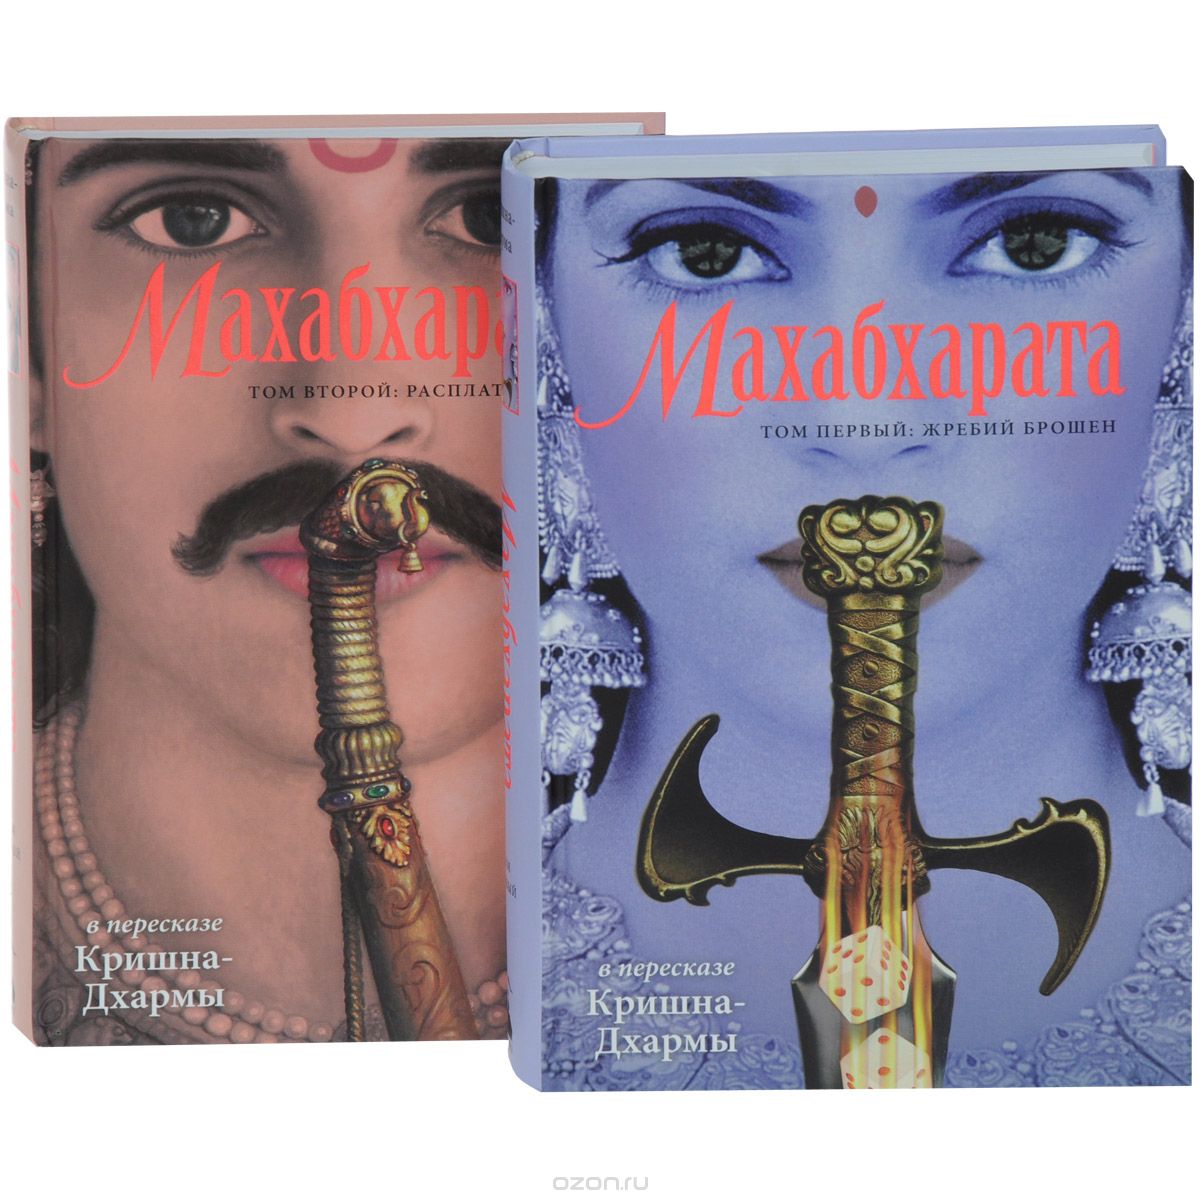 Скачать книгу "Махабхарата в 2 томах (комплект из 2 книг)"